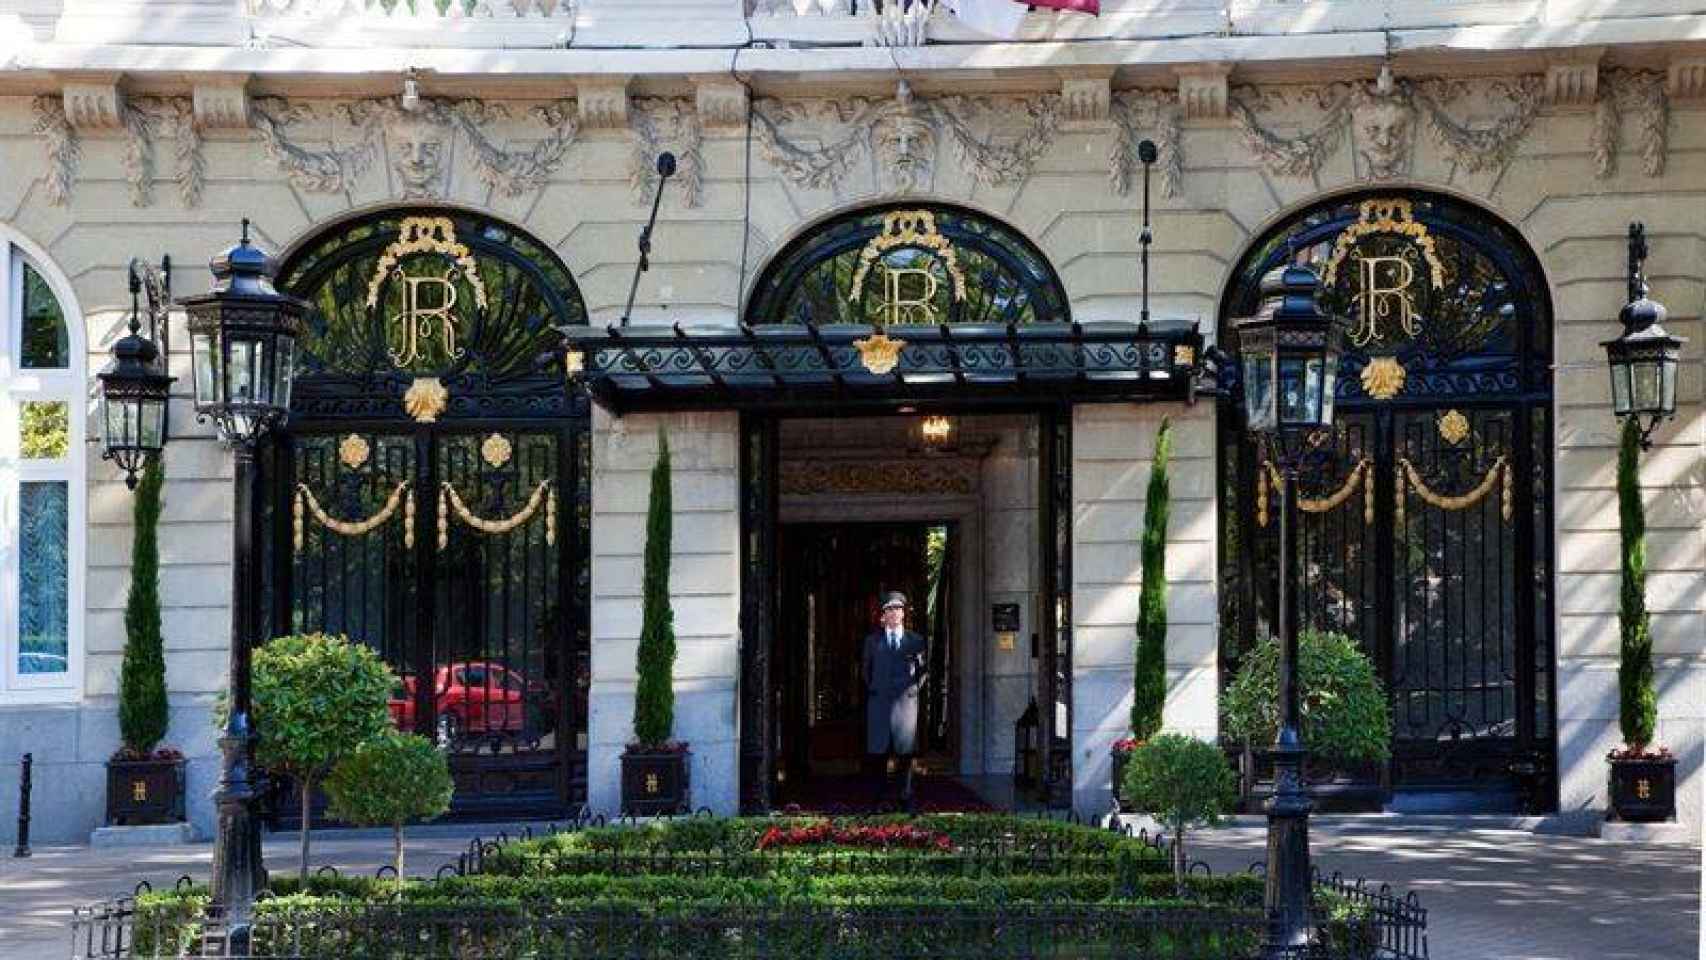 Entrada del hotel Ritz de Madrid, uno de los establecimientos más emblemáticos de la capital.